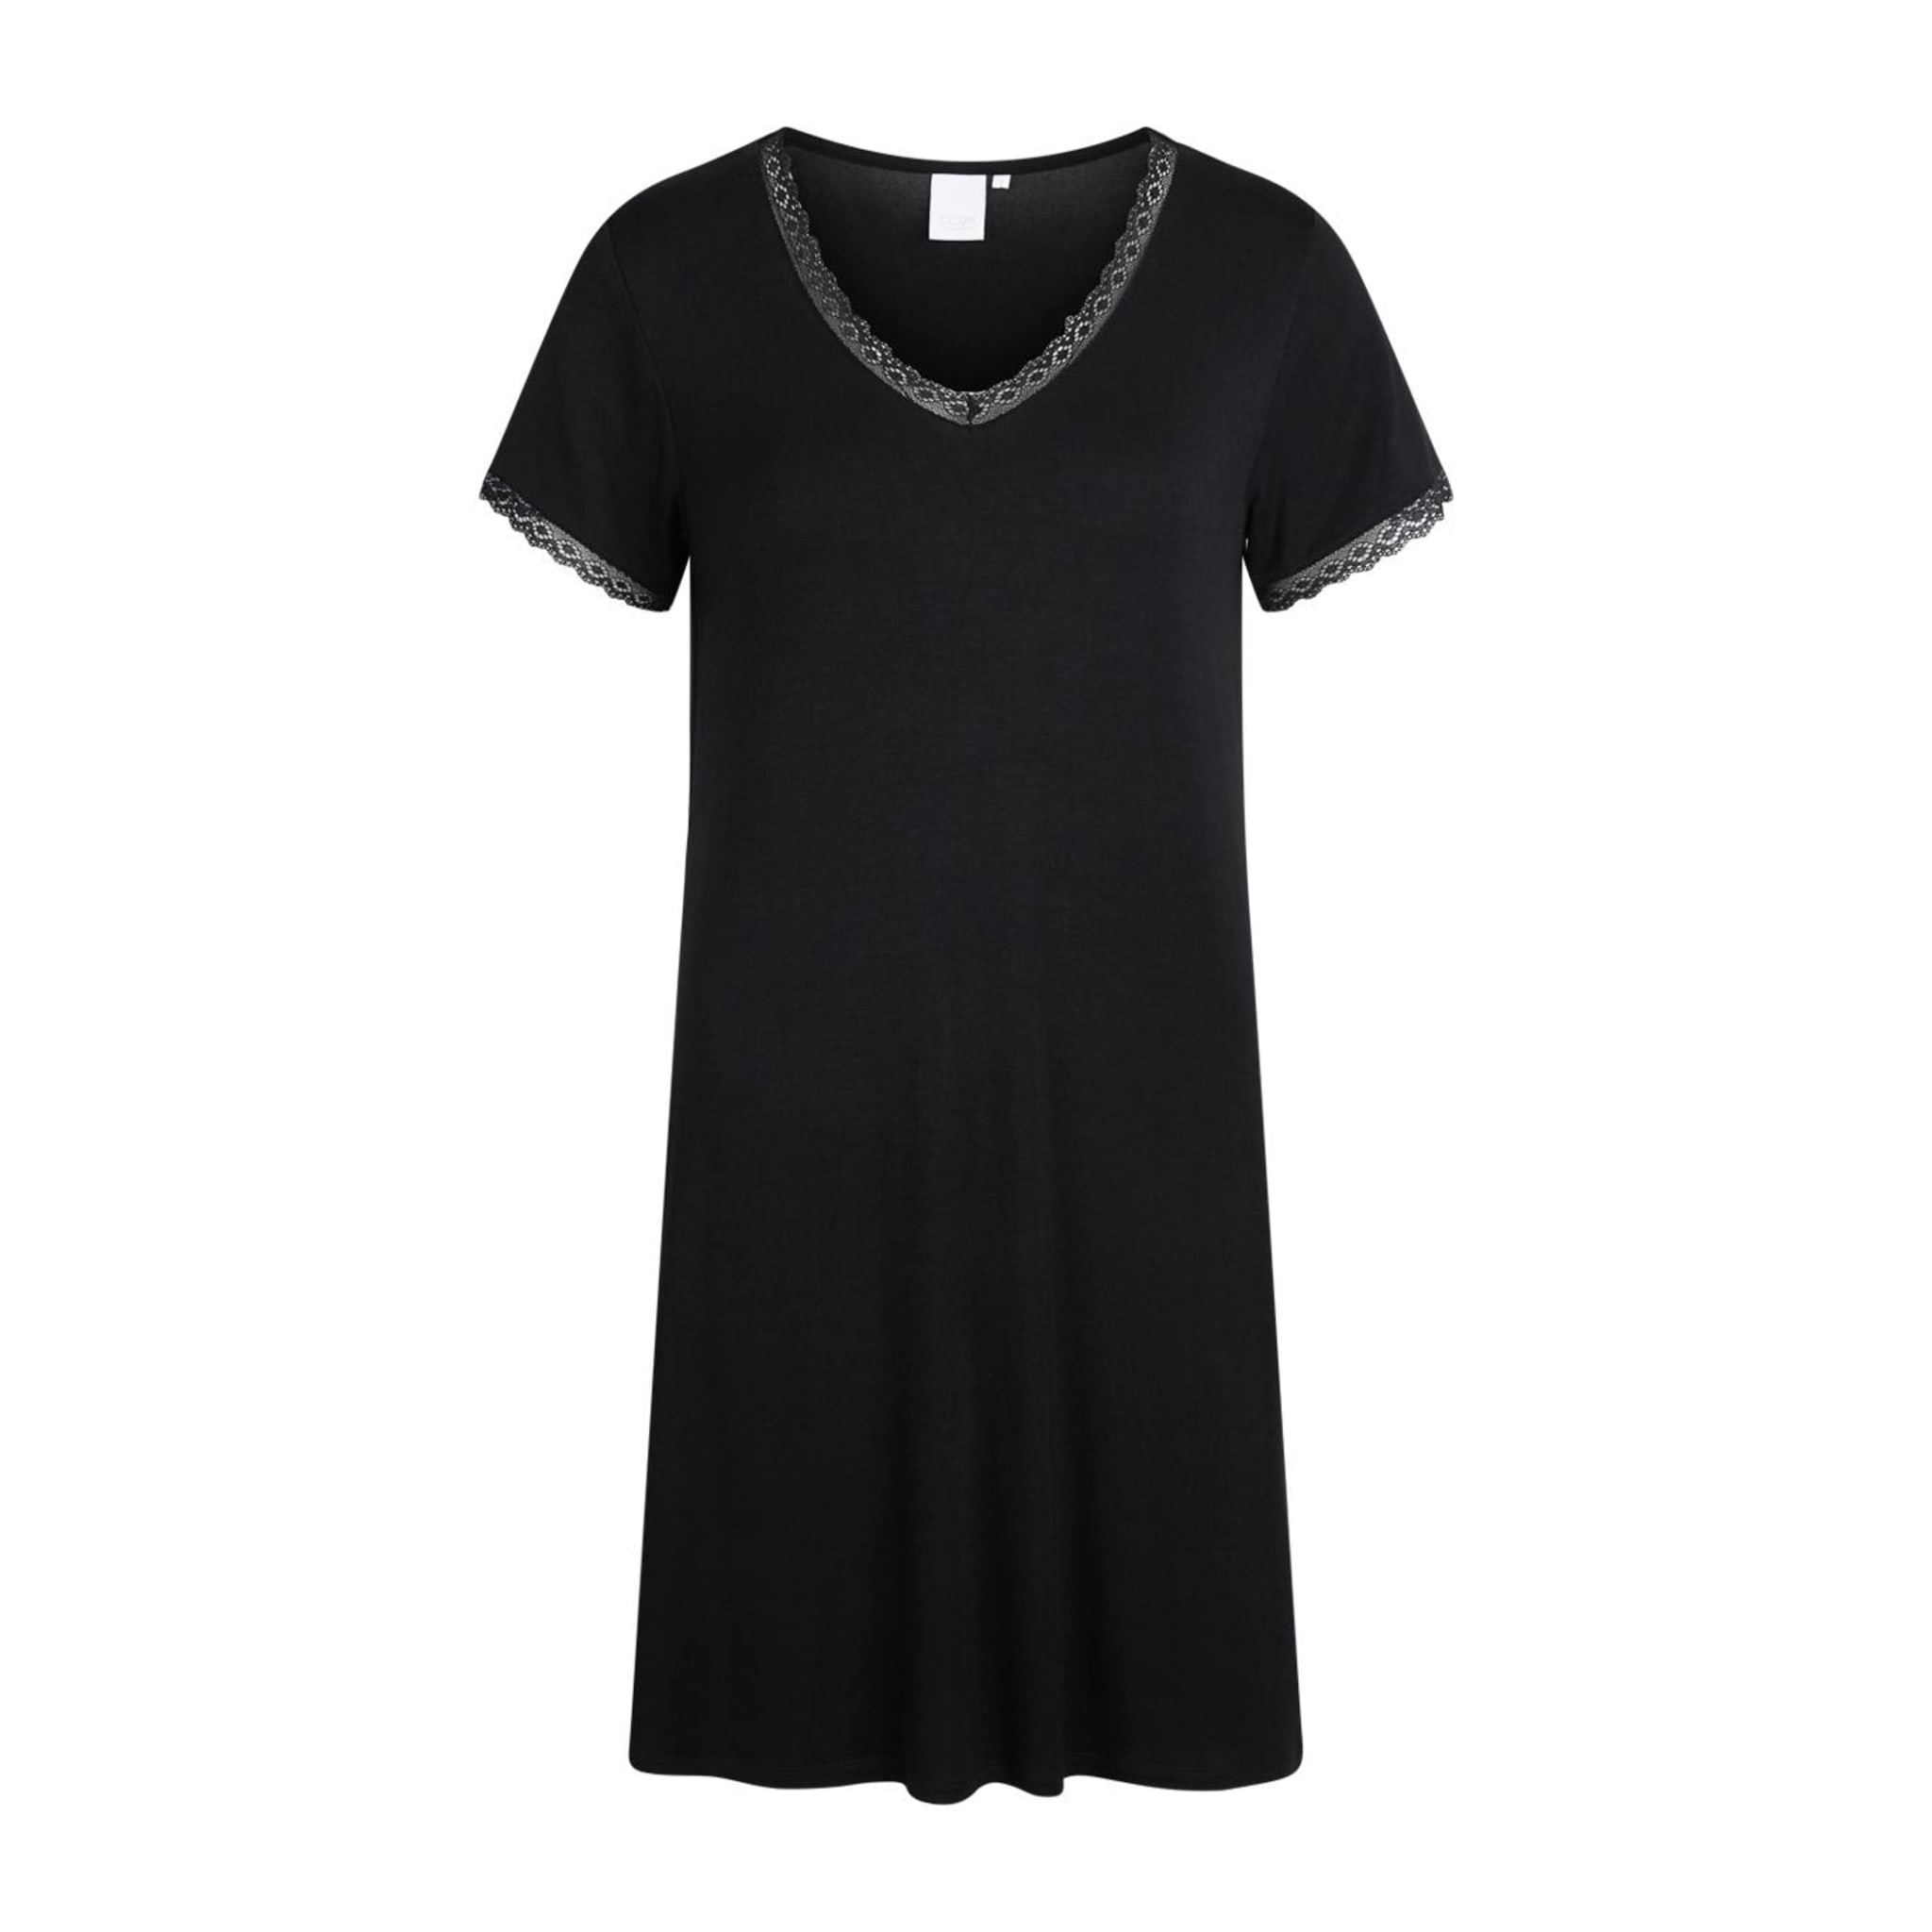 Ccdk Jacqueline S/s Dress Black, black